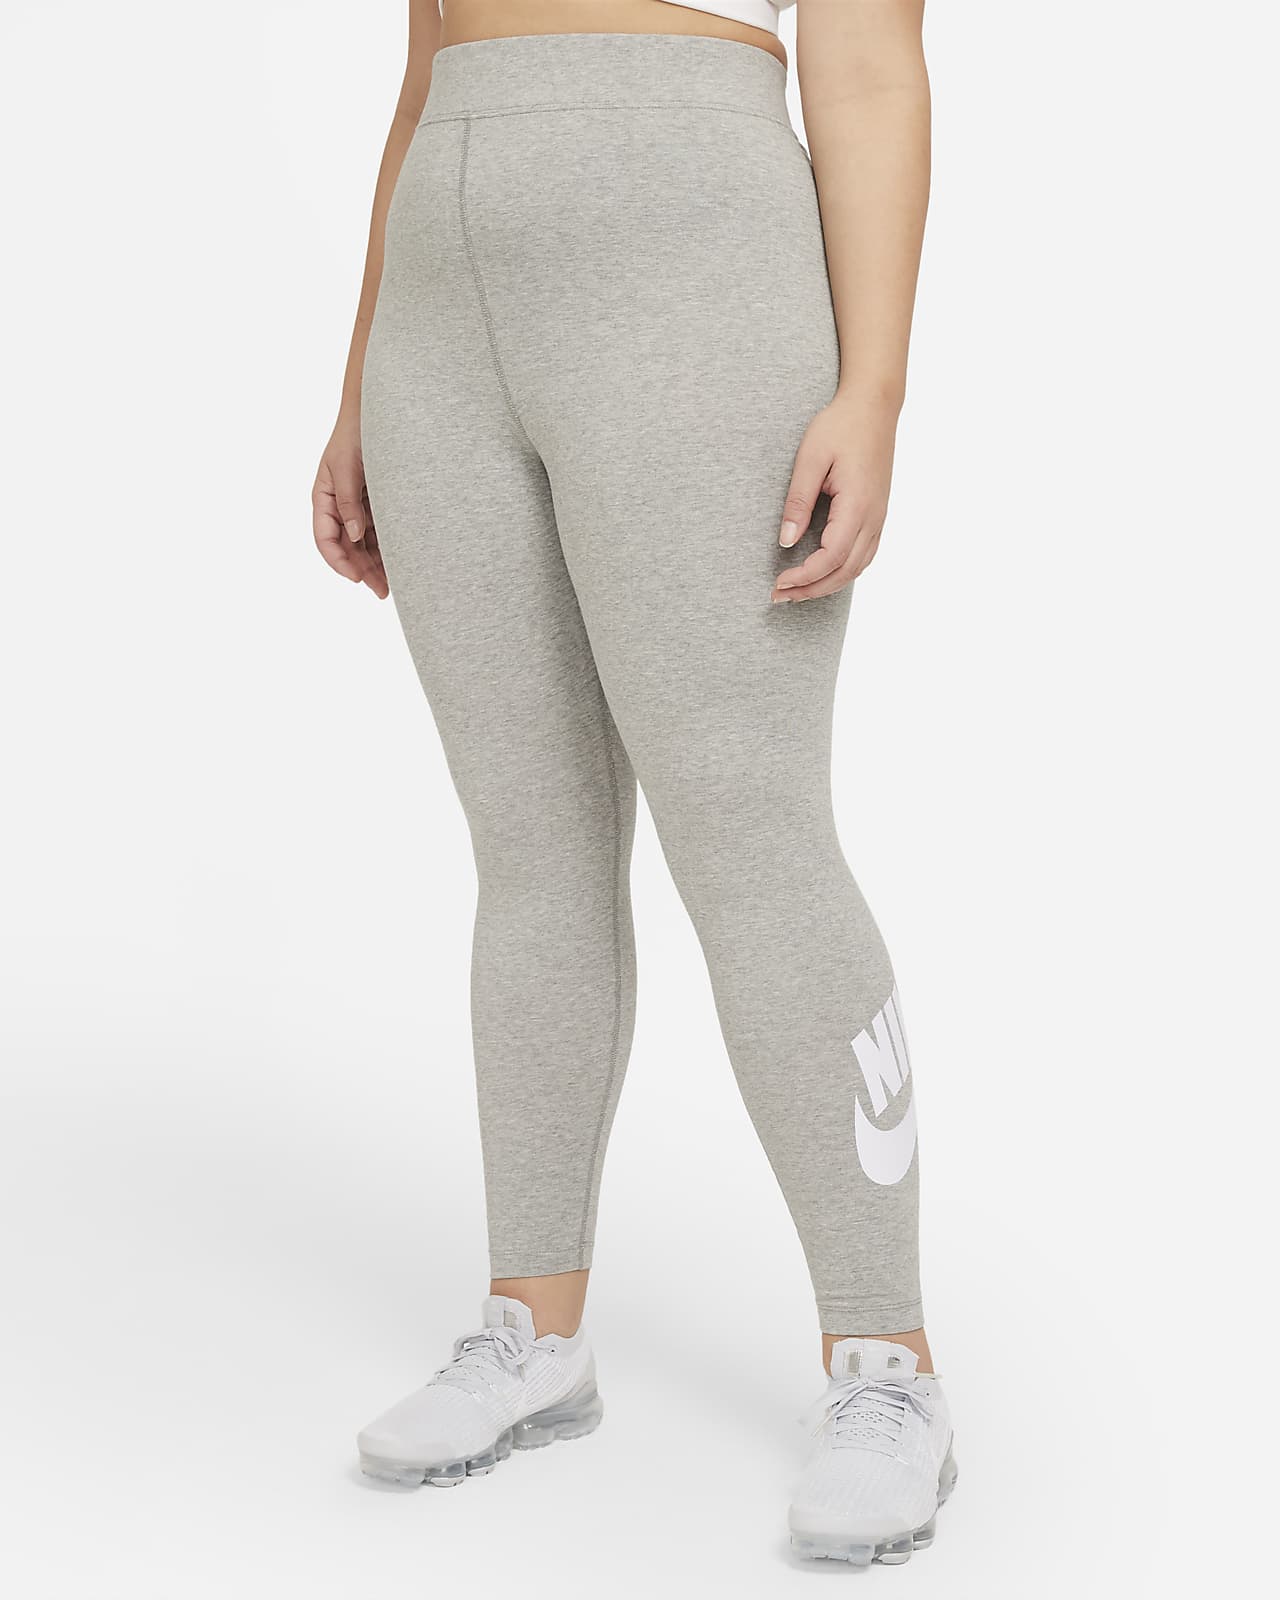 Nike Sportswear Essential Leggings mit hohem Bund für Damen (große Größe)